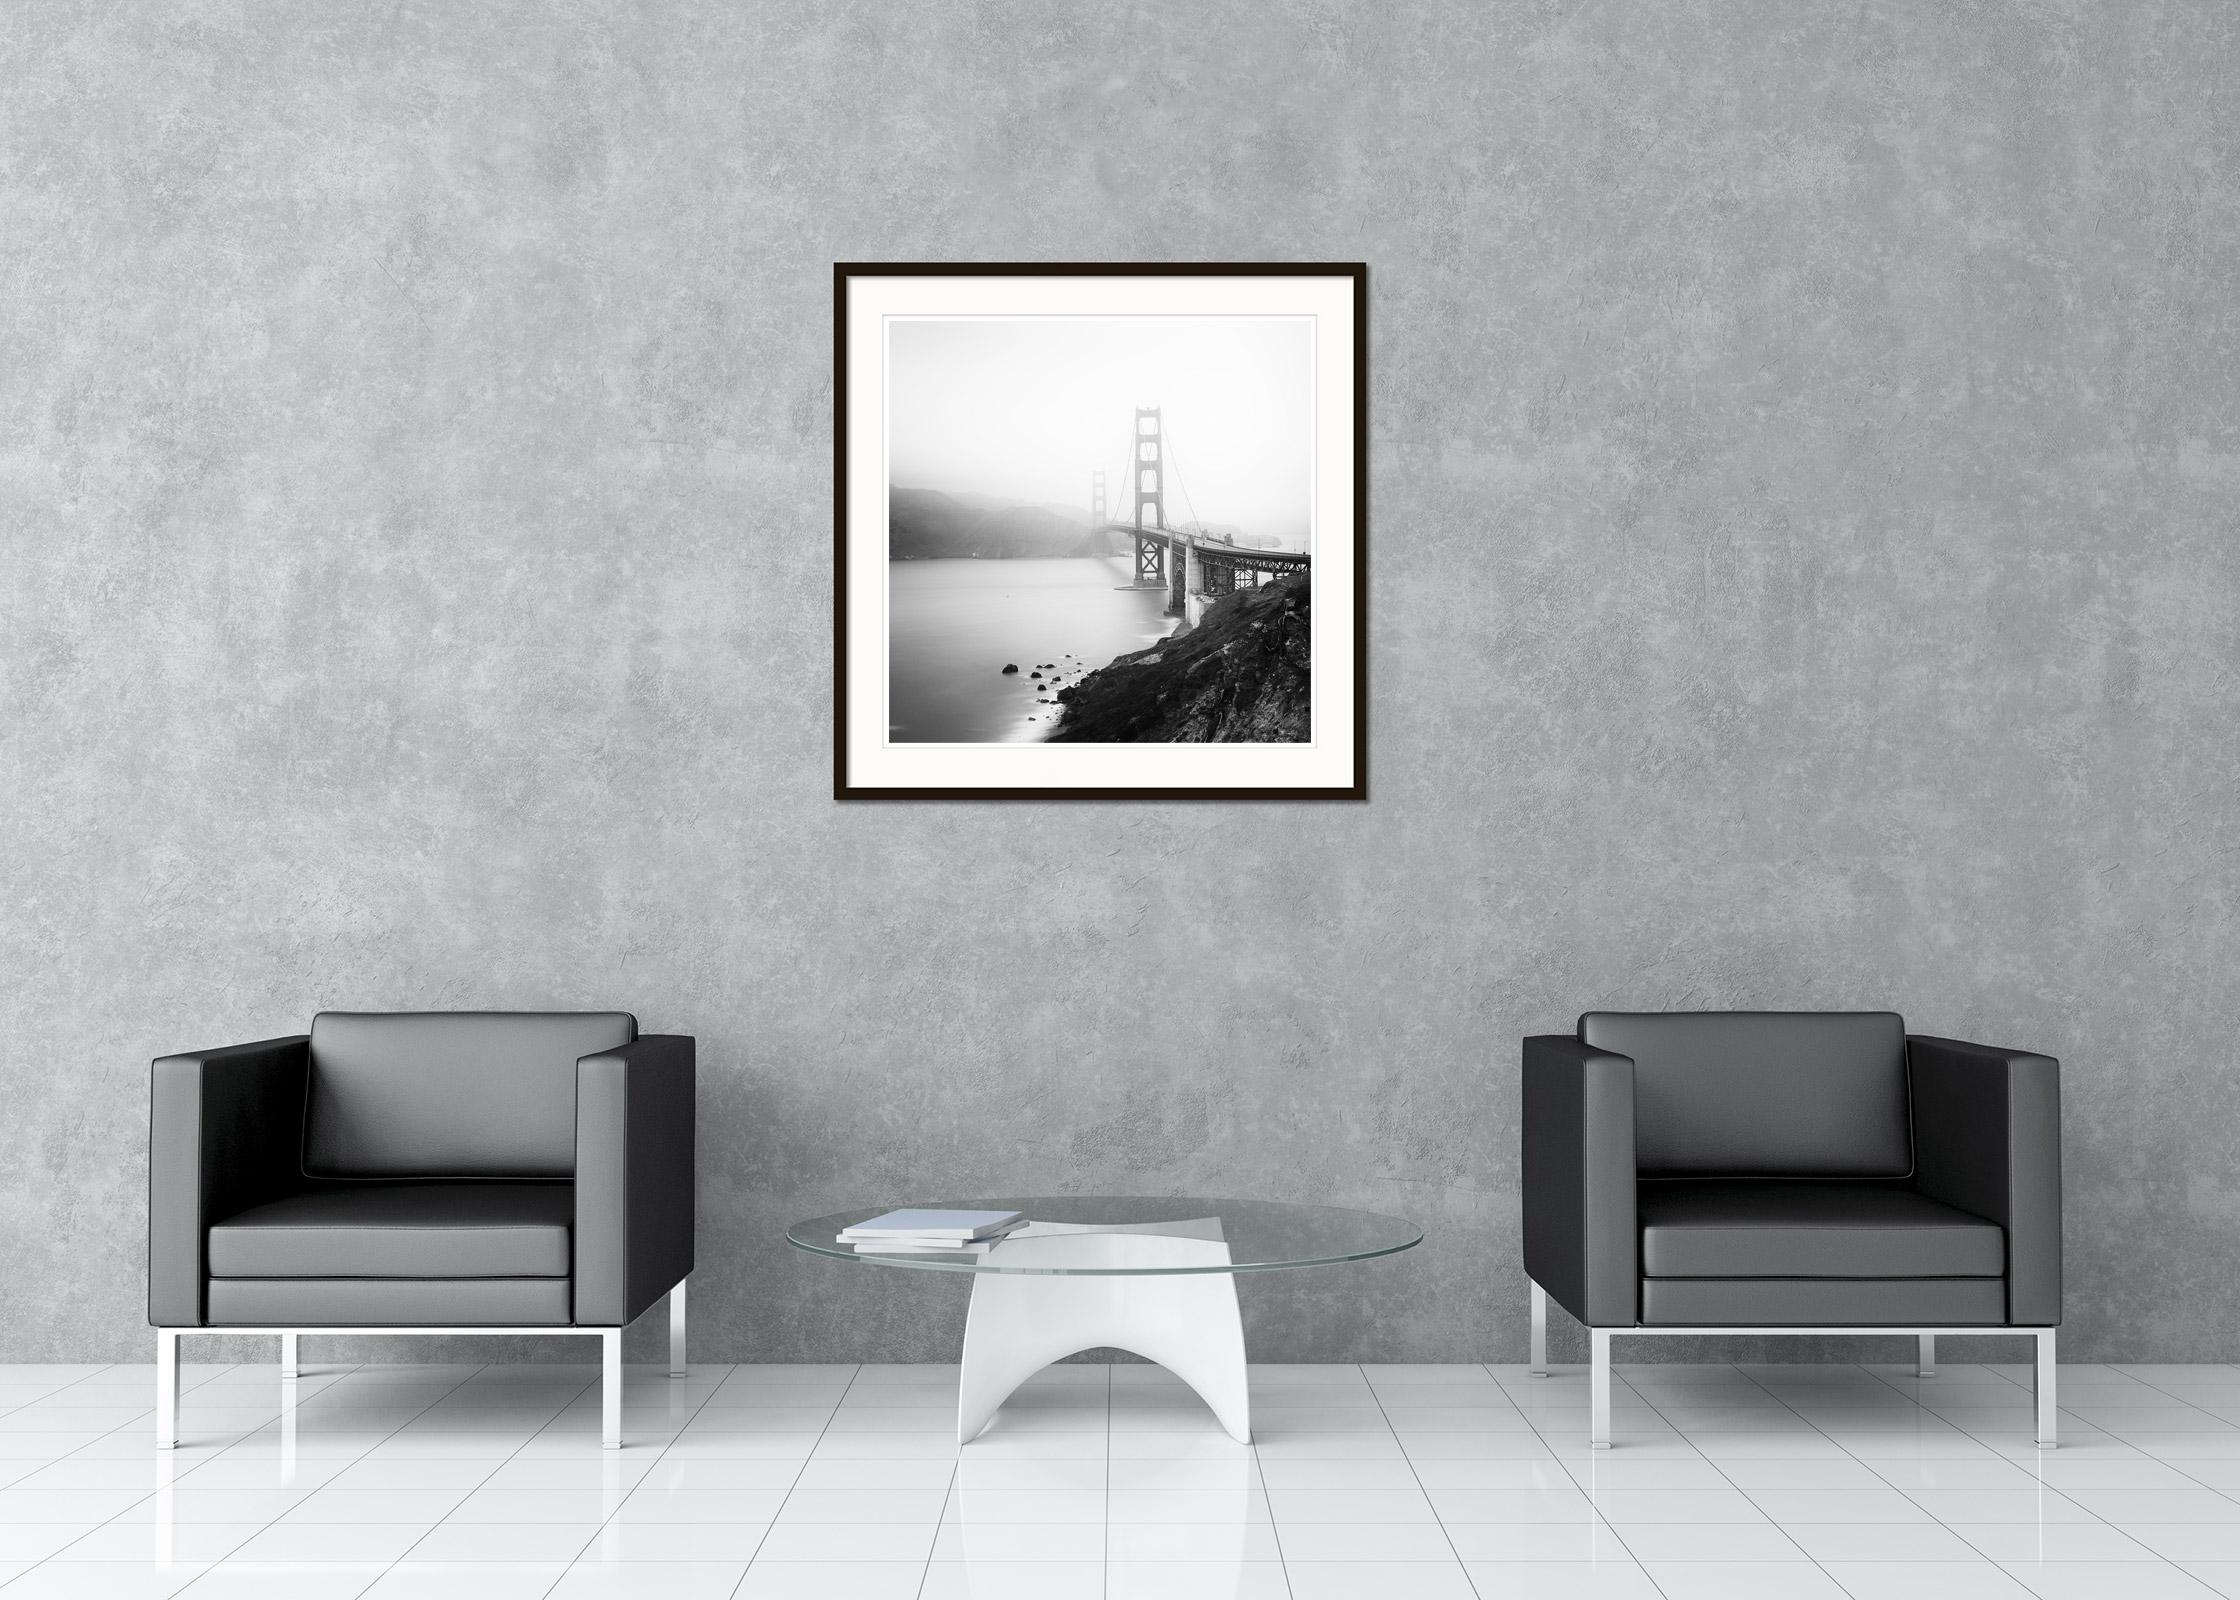 Schwarz-Weiß-Fotografie - Golden Gate Bridge, nebliger Morgen, Fort Point, San Francisco, USA. Pigmenttintendruck, Auflage 9, signiert, betitelt, datiert und nummeriert vom Künstler. Mit Echtheitszertifikat. Bedruckt mit einem 4 cm breiten weißen